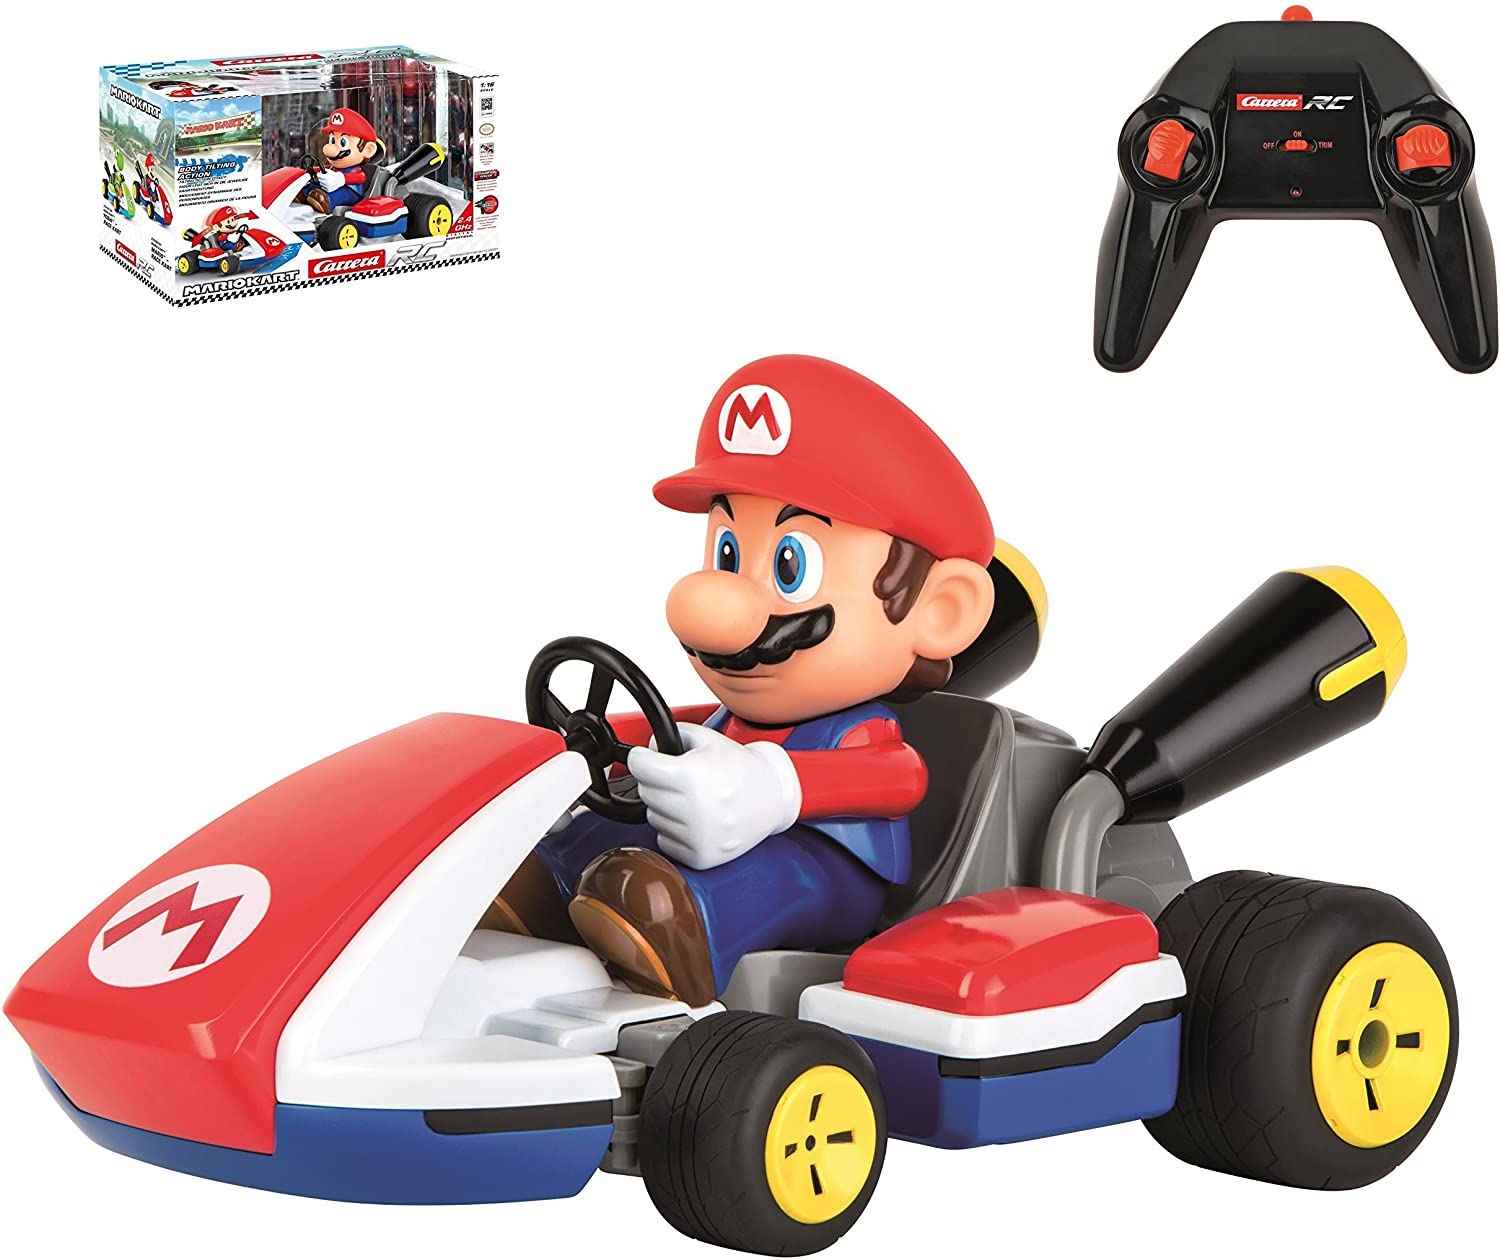 Carrera RC Mario Kart Mario távirányítós autó - Ajándéktárgyak Ajándéktárgyak